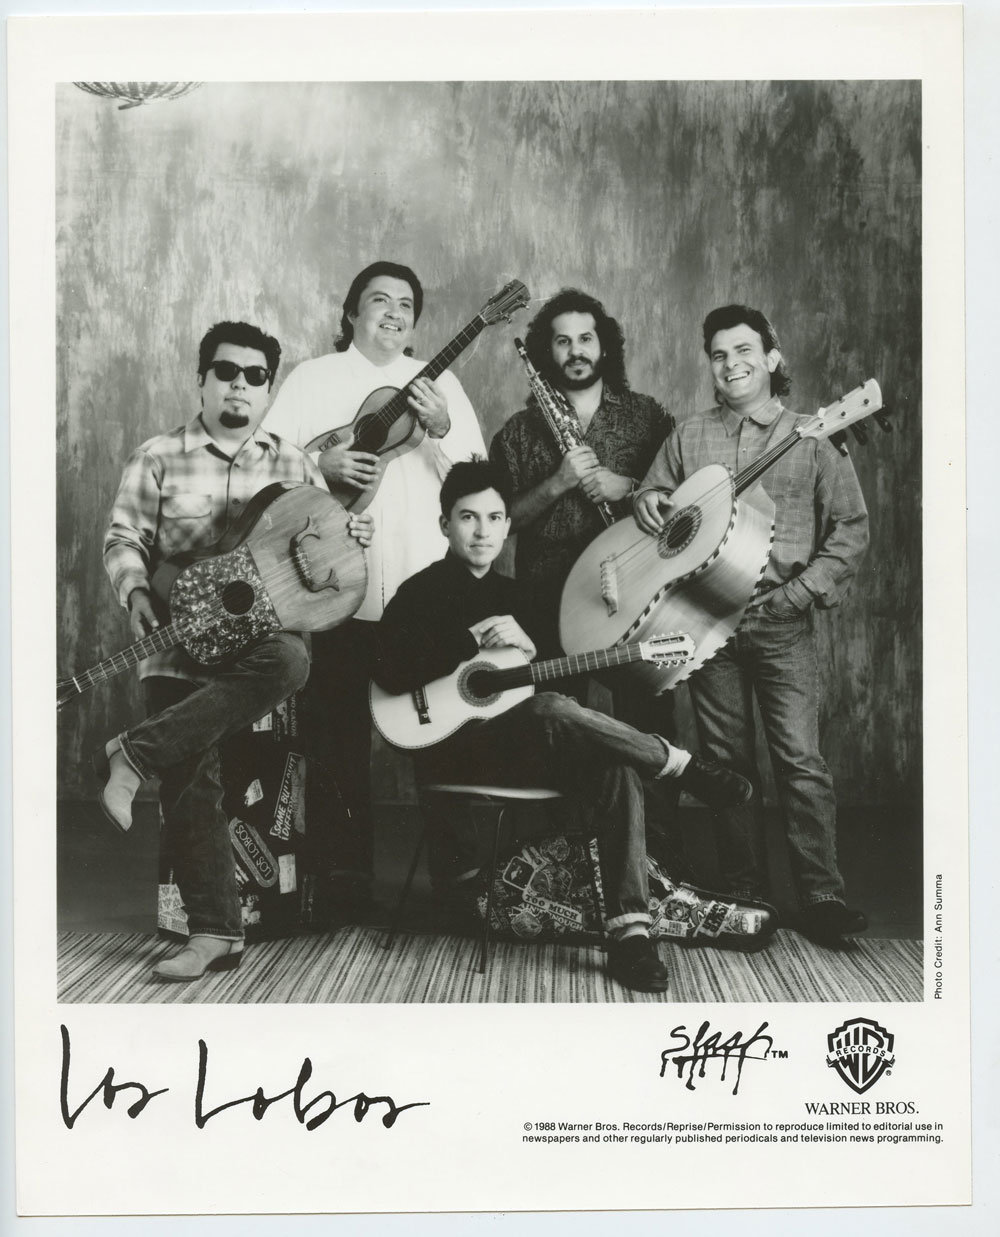 Los Lobos Photo 1980s Warner Bros Records